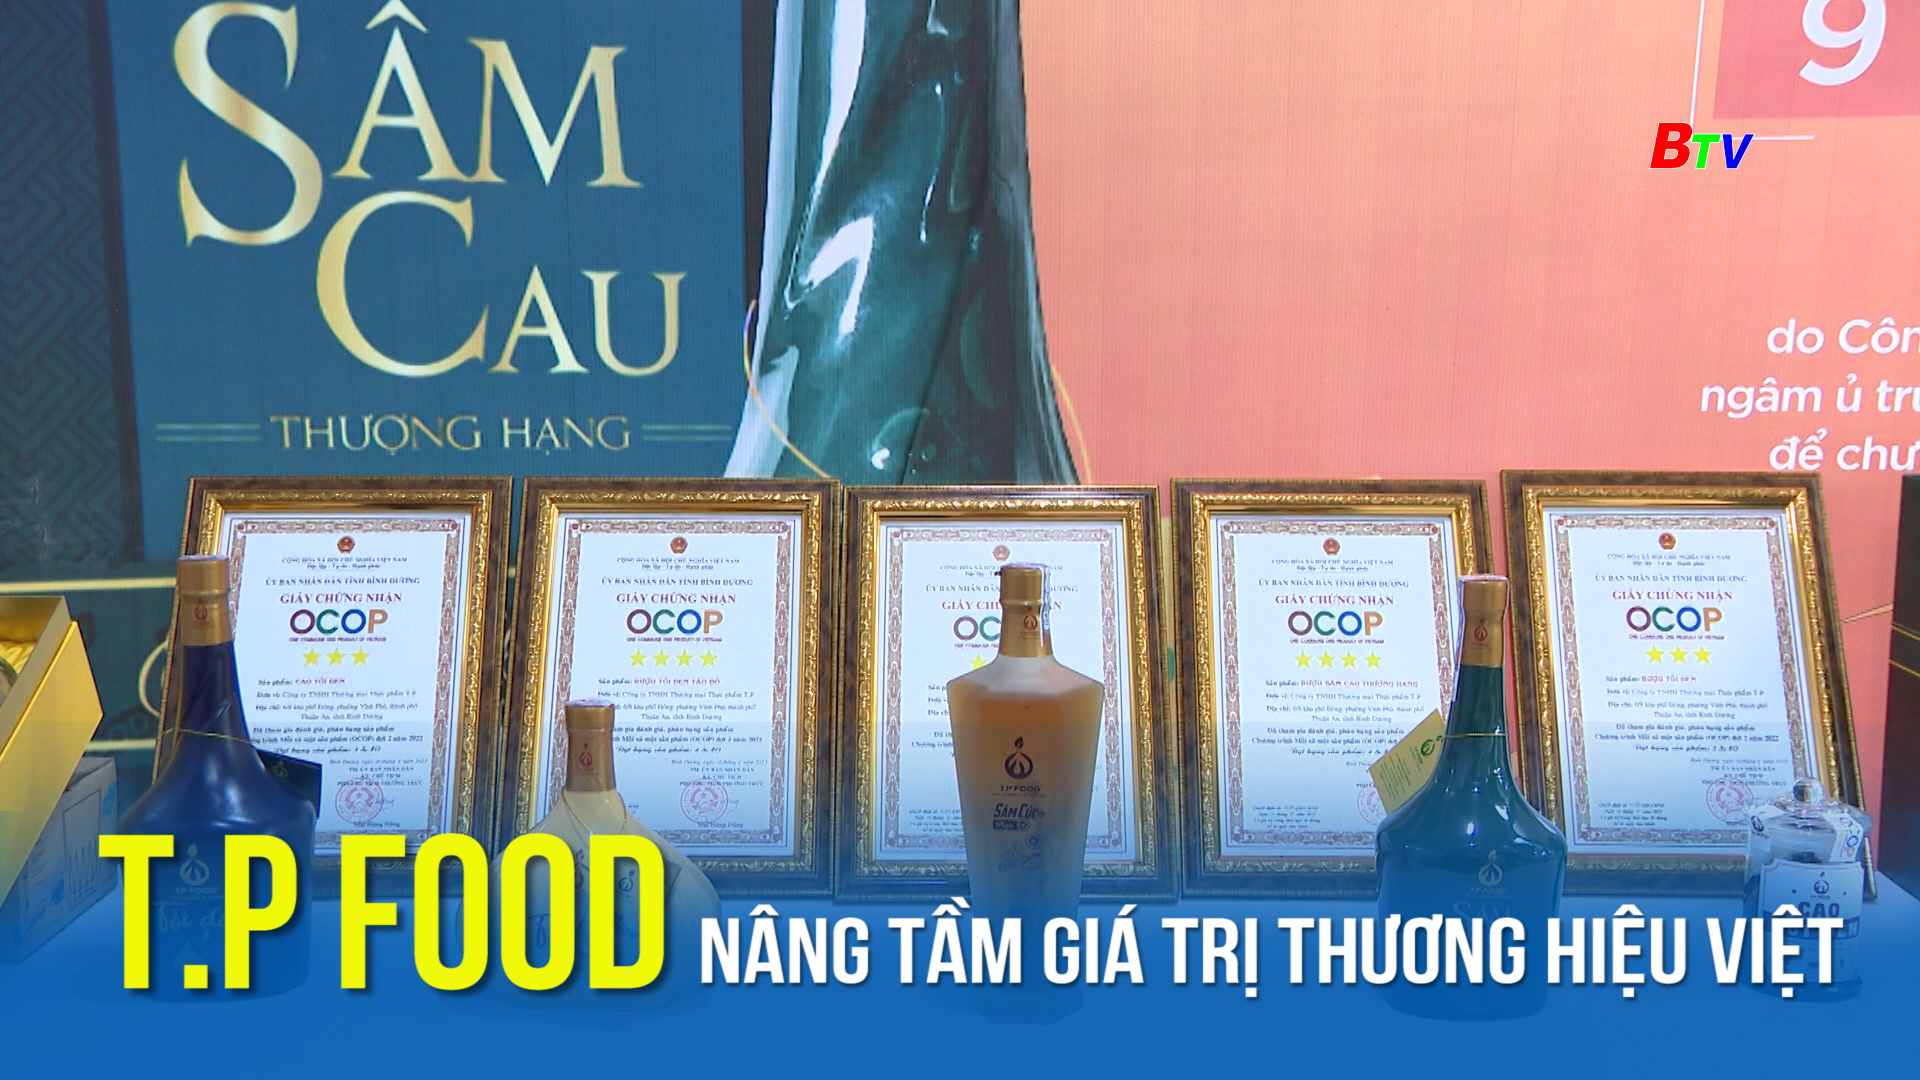 T.P FOOD nâng tầm giá trị thương hiệu Việt